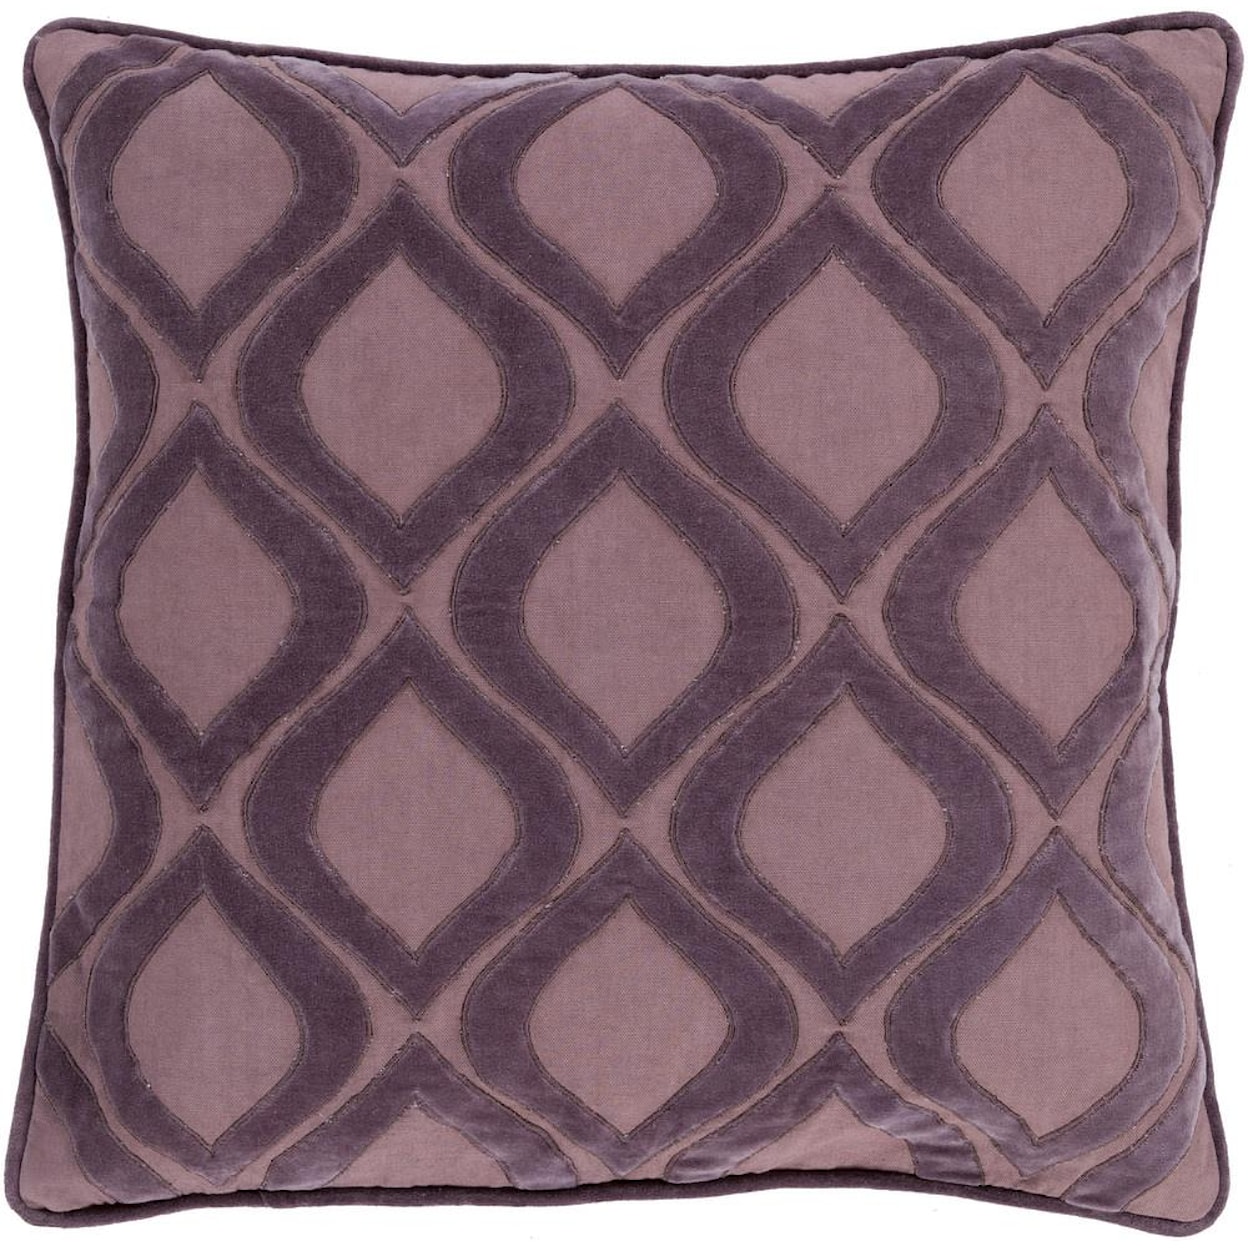 Surya Pillows 22" x 22" Decorative Pillow